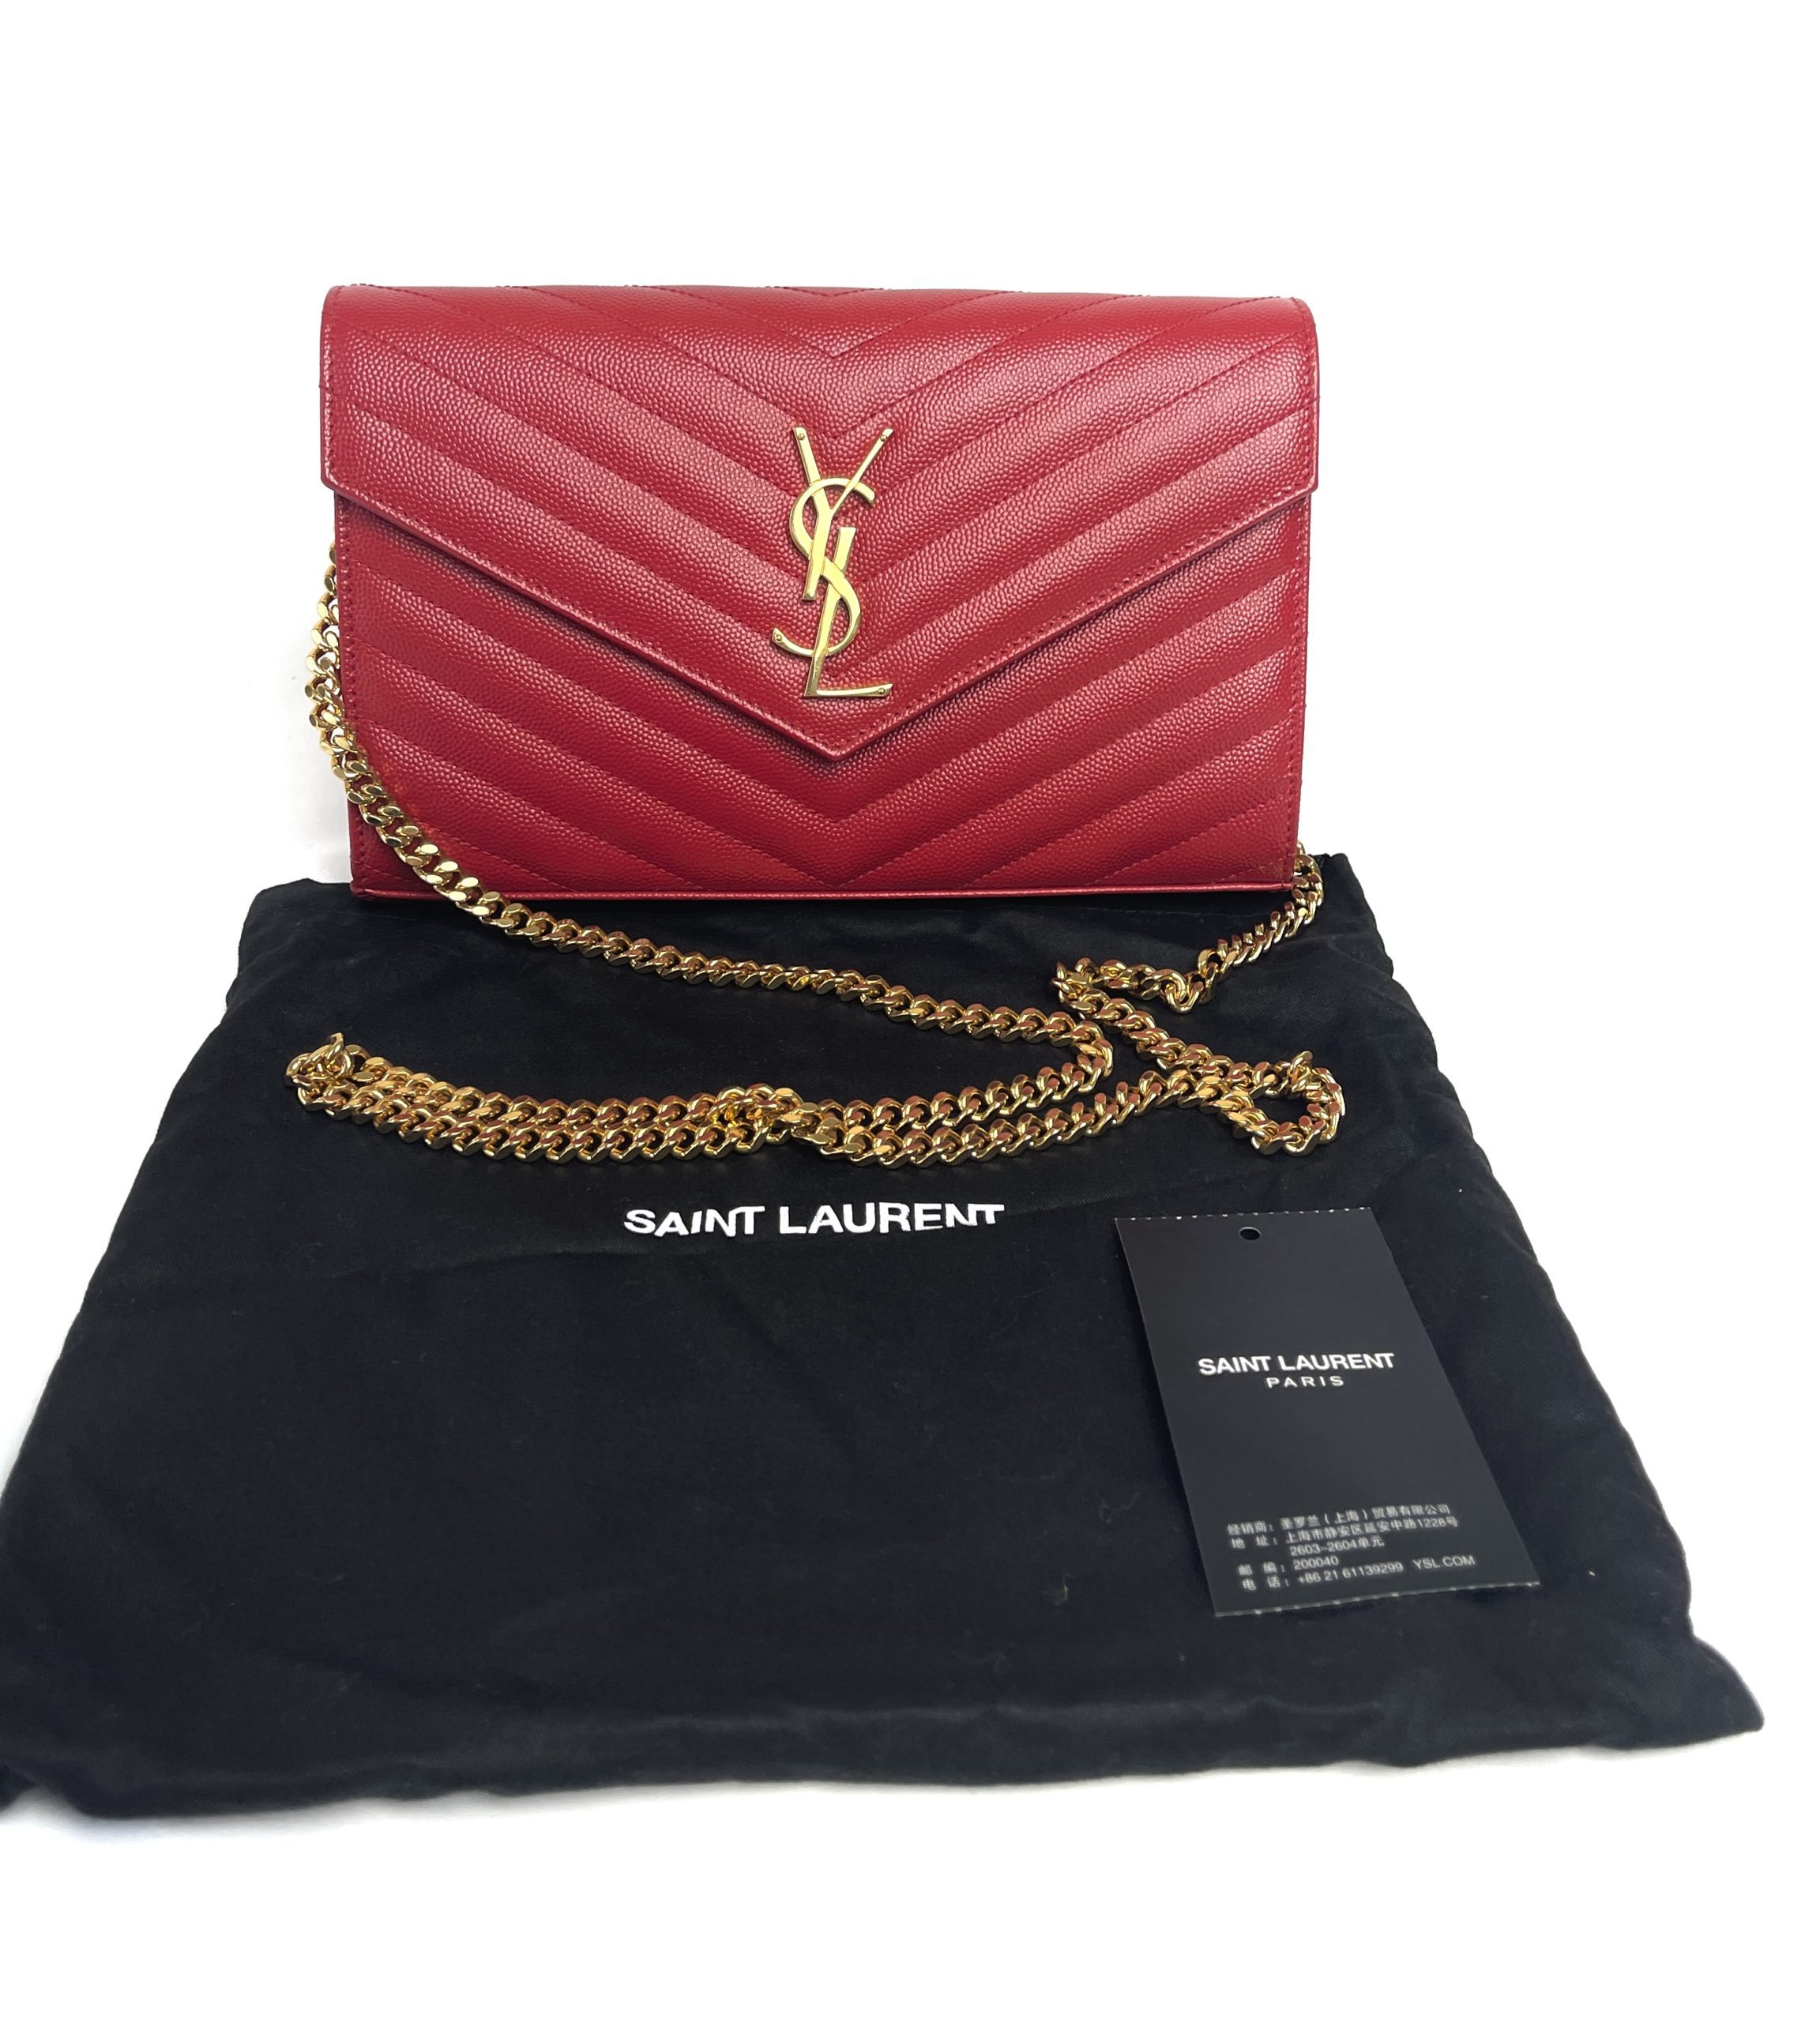 Saint Laurent, Bags, Saint Laurent Wallet On Chain Red